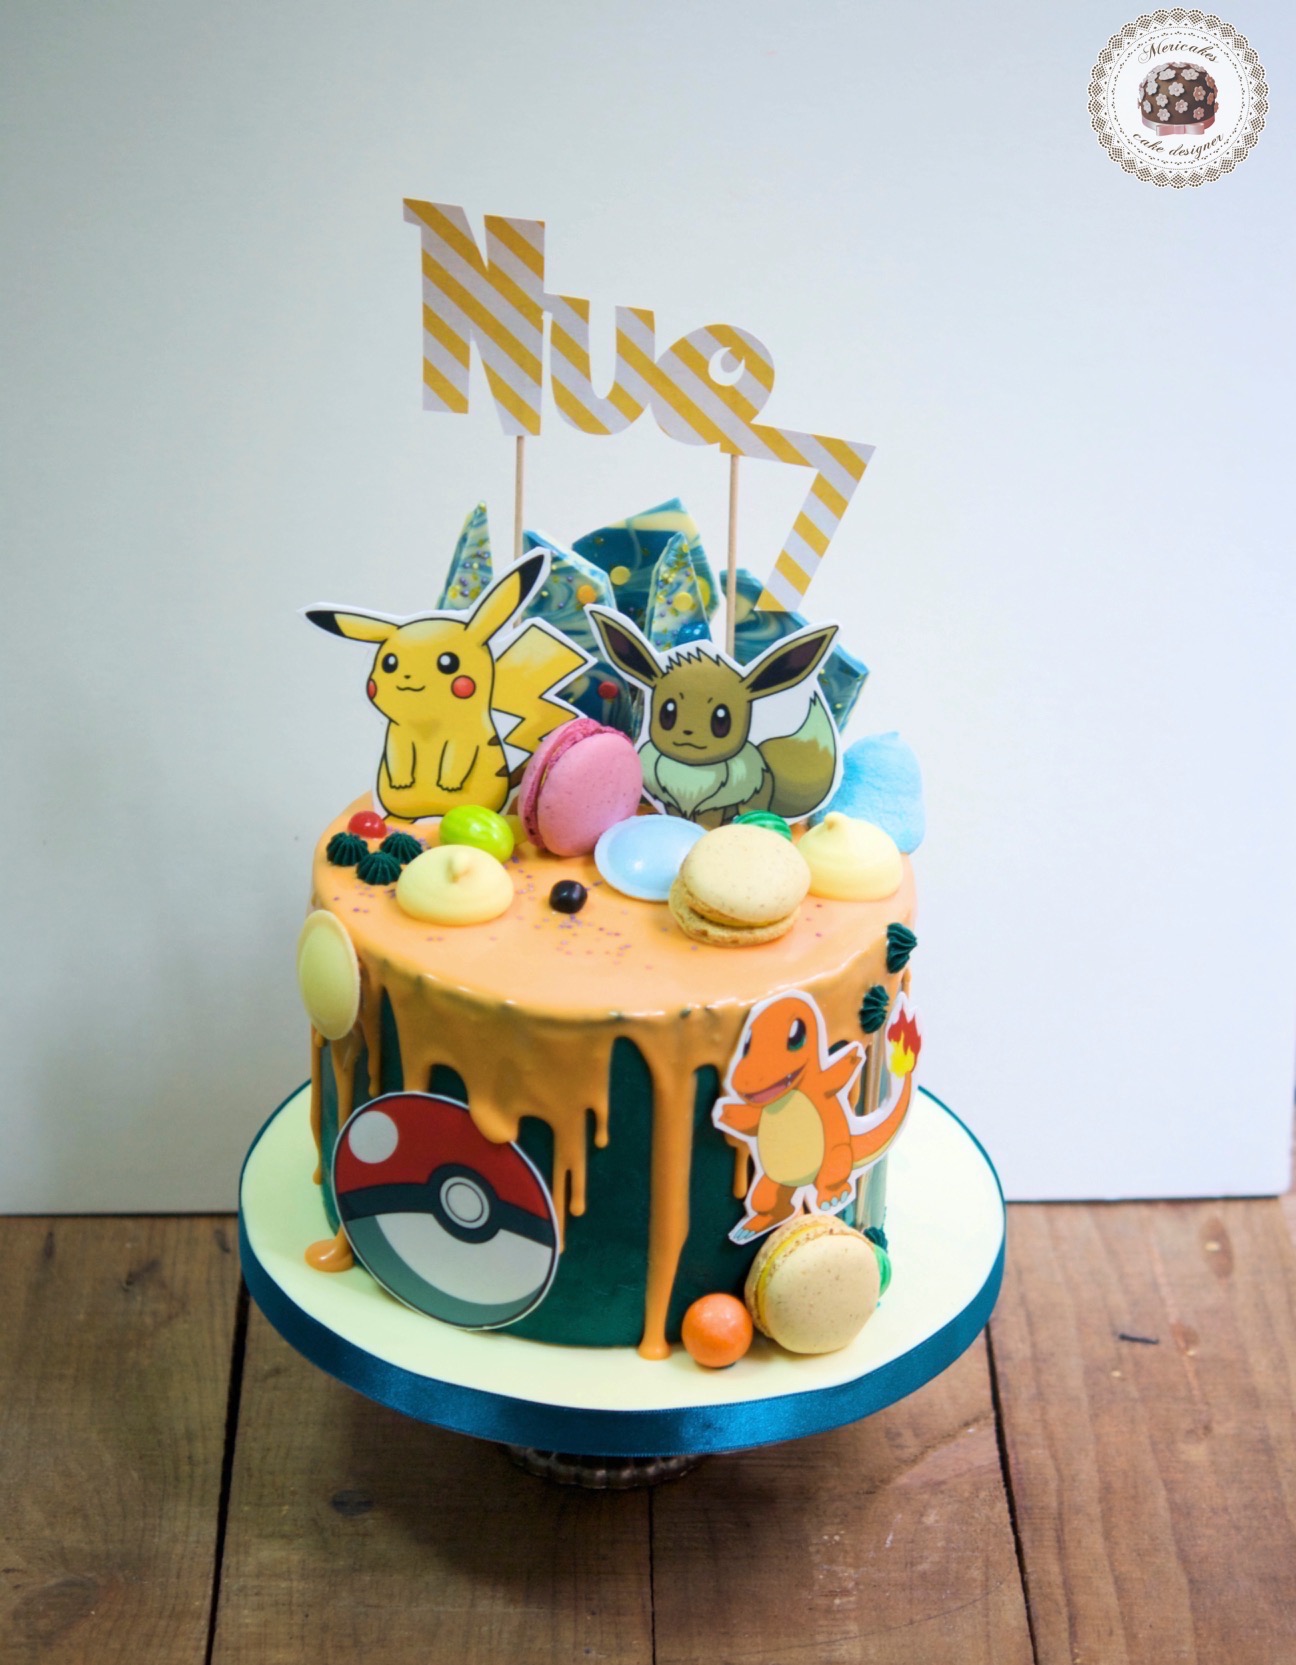 drip-cake-pokemon-pikachu -bulbasaur-charmander-tartas-decoradas-mericakes-barcelona-macarons-chocolate- pastel-de-cumpleanos-tartas-personalizadas-1 - Mericakes - Cake Designer